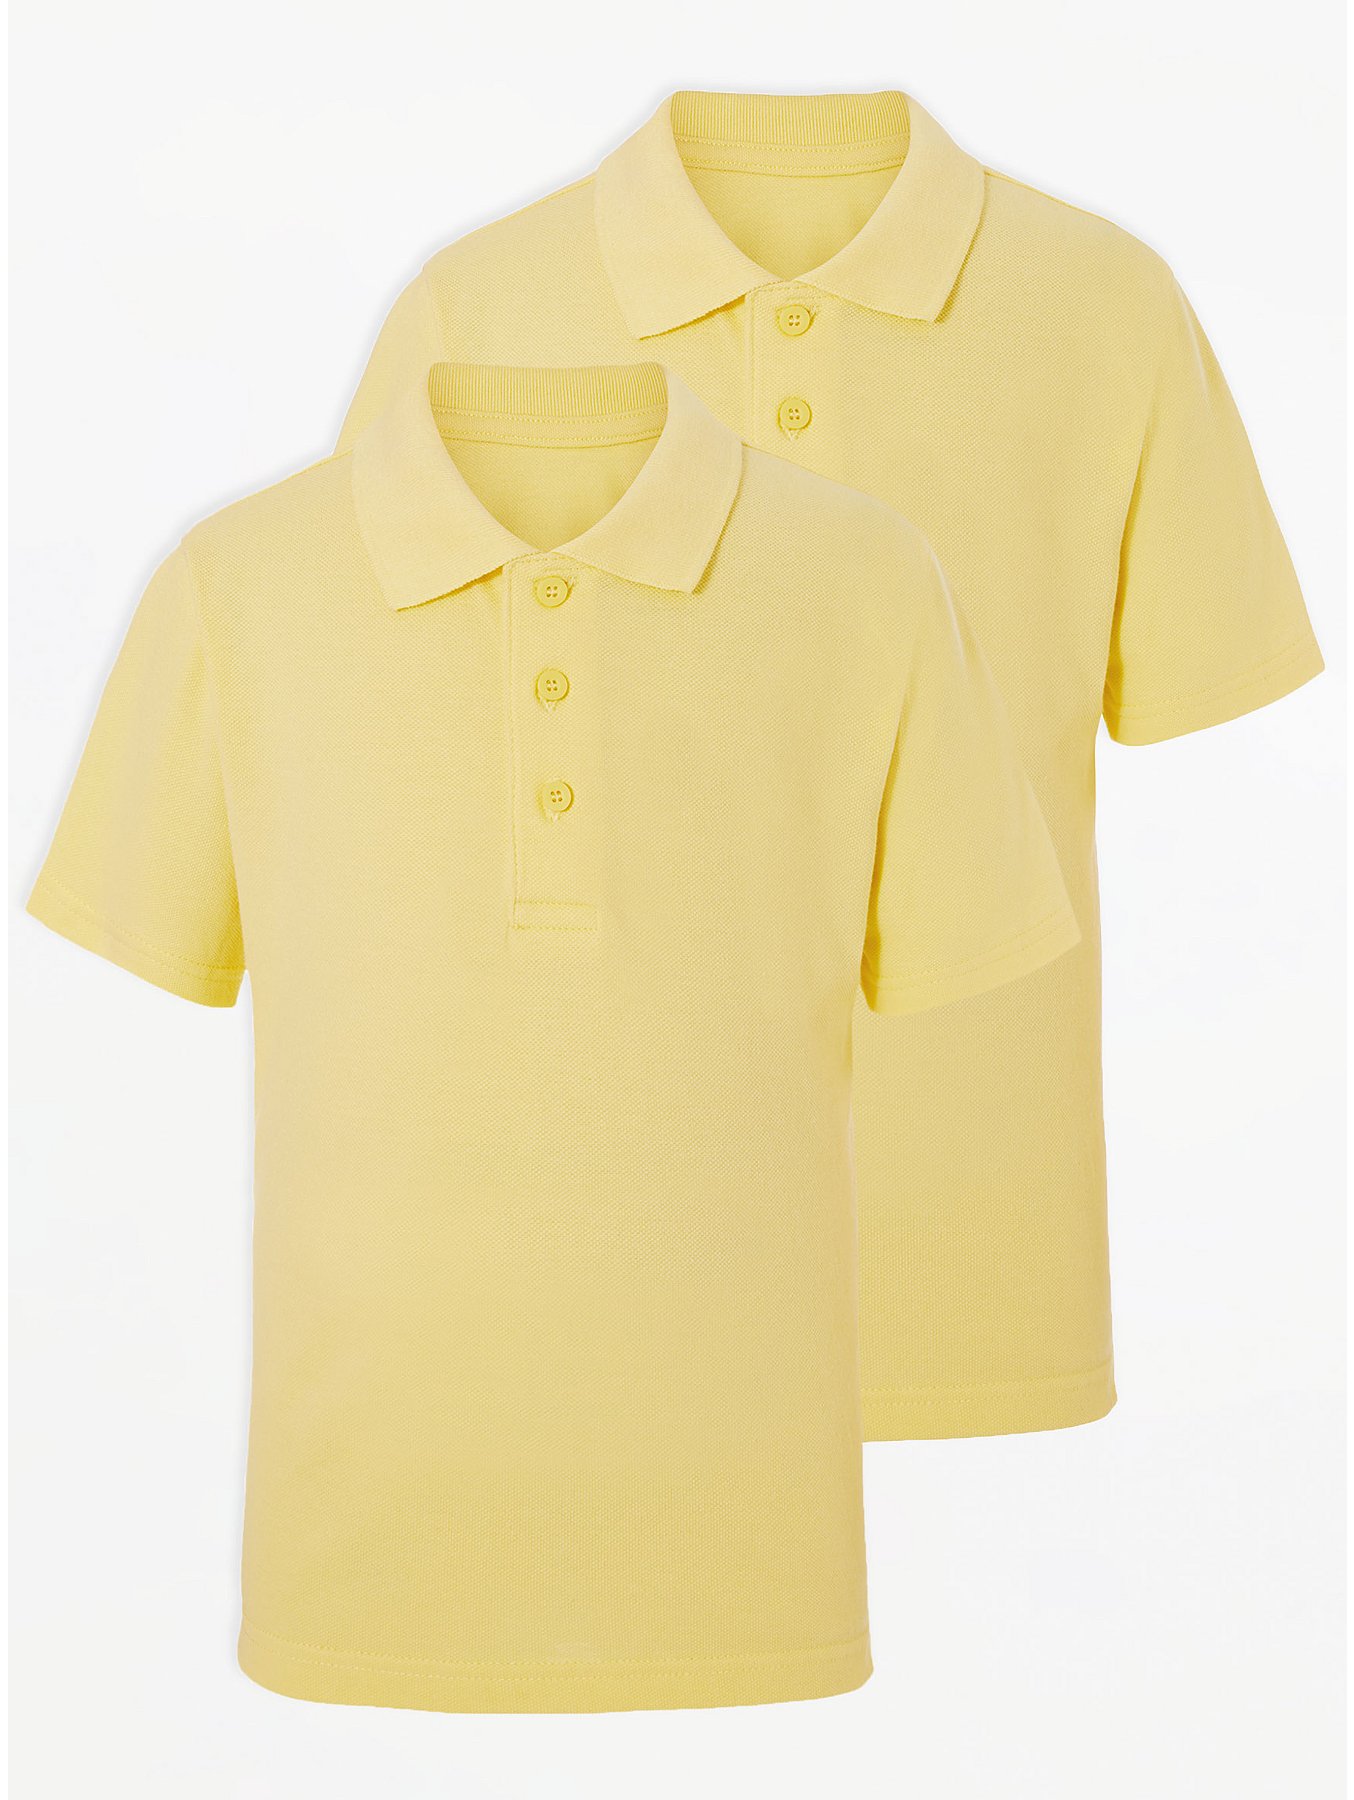 Yellow Polo Shirts Childrens Nils Stucki Kieferorthopade - asda roblox t shirt